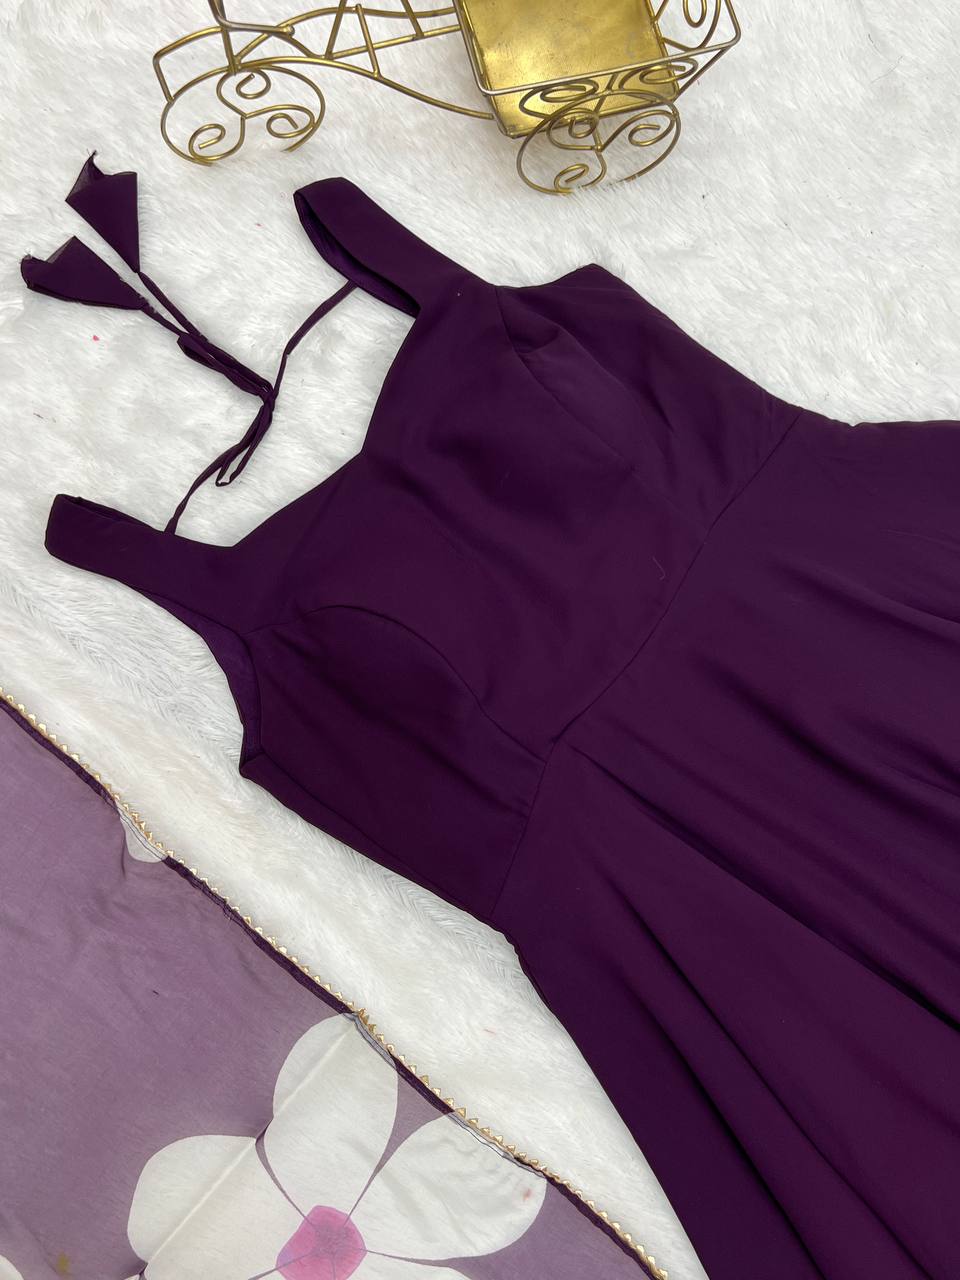 Buy Purple Dresses Online in India at Best Price - Westside